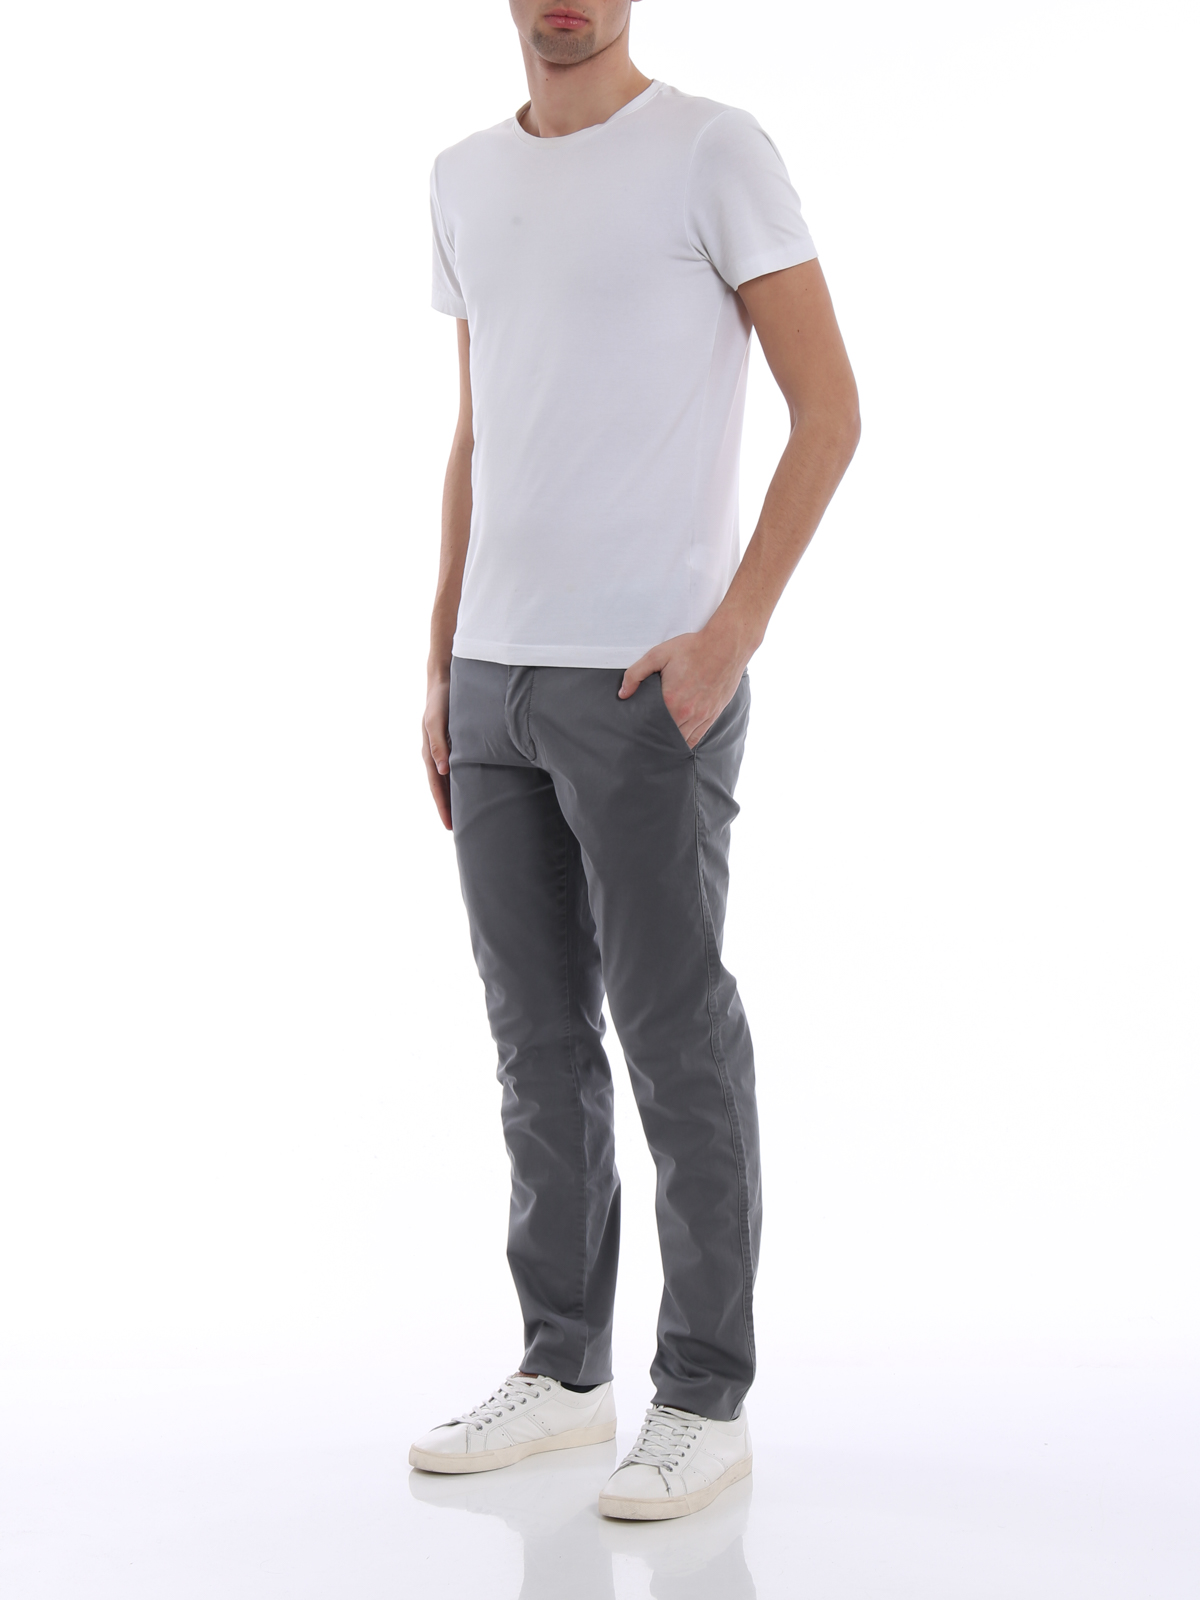 Casual trousers Emporio Armani Grey cotton chino trousers - 3Z1P151NEDZ0620